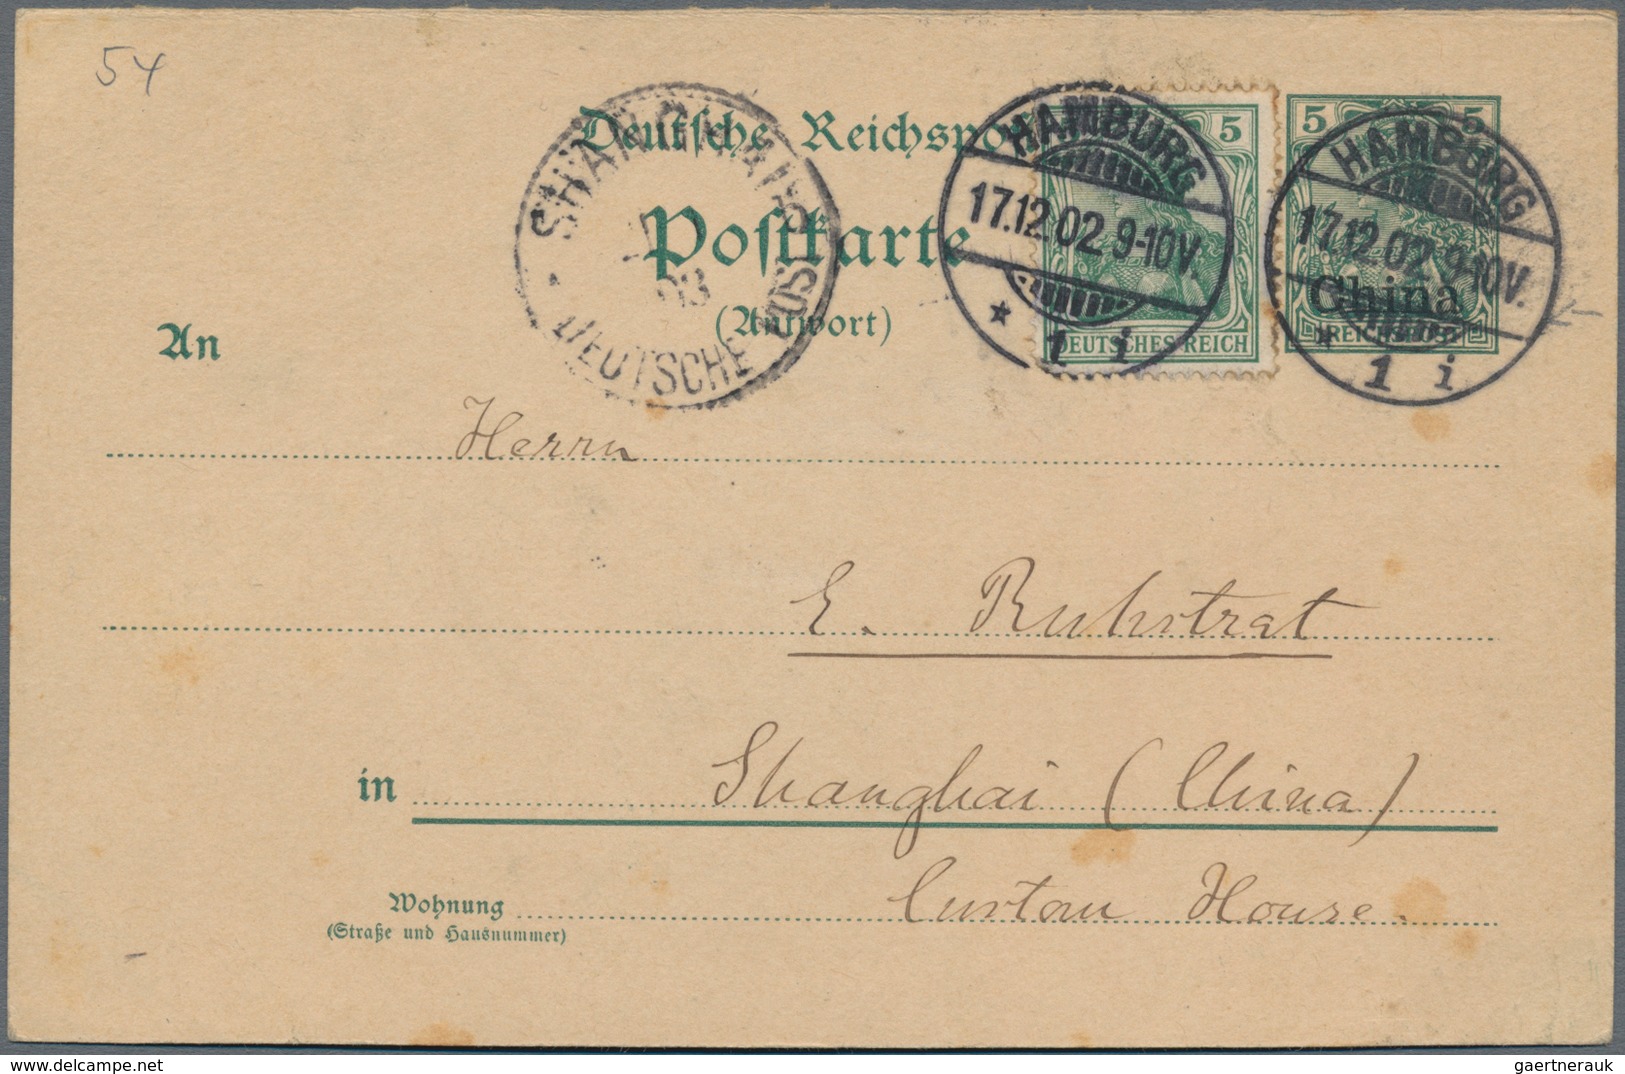 Deutsche Post In China - Ganzsachen: 1902 Antwortteil 5 Pf Germania Reichspost Mit Aufdruck "China" - China (offices)